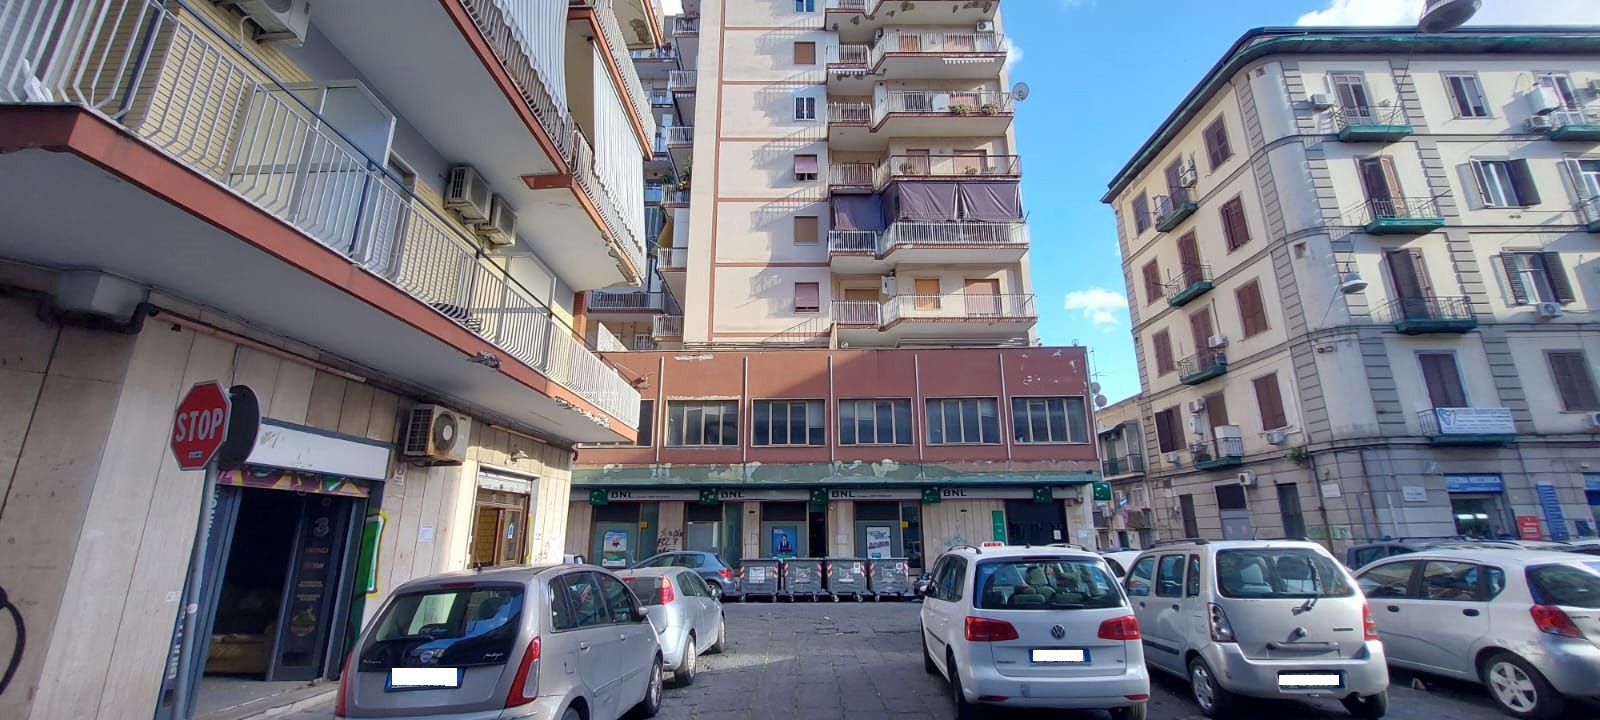 Negozio in affitto a Camaldoli, Napoli (NA)